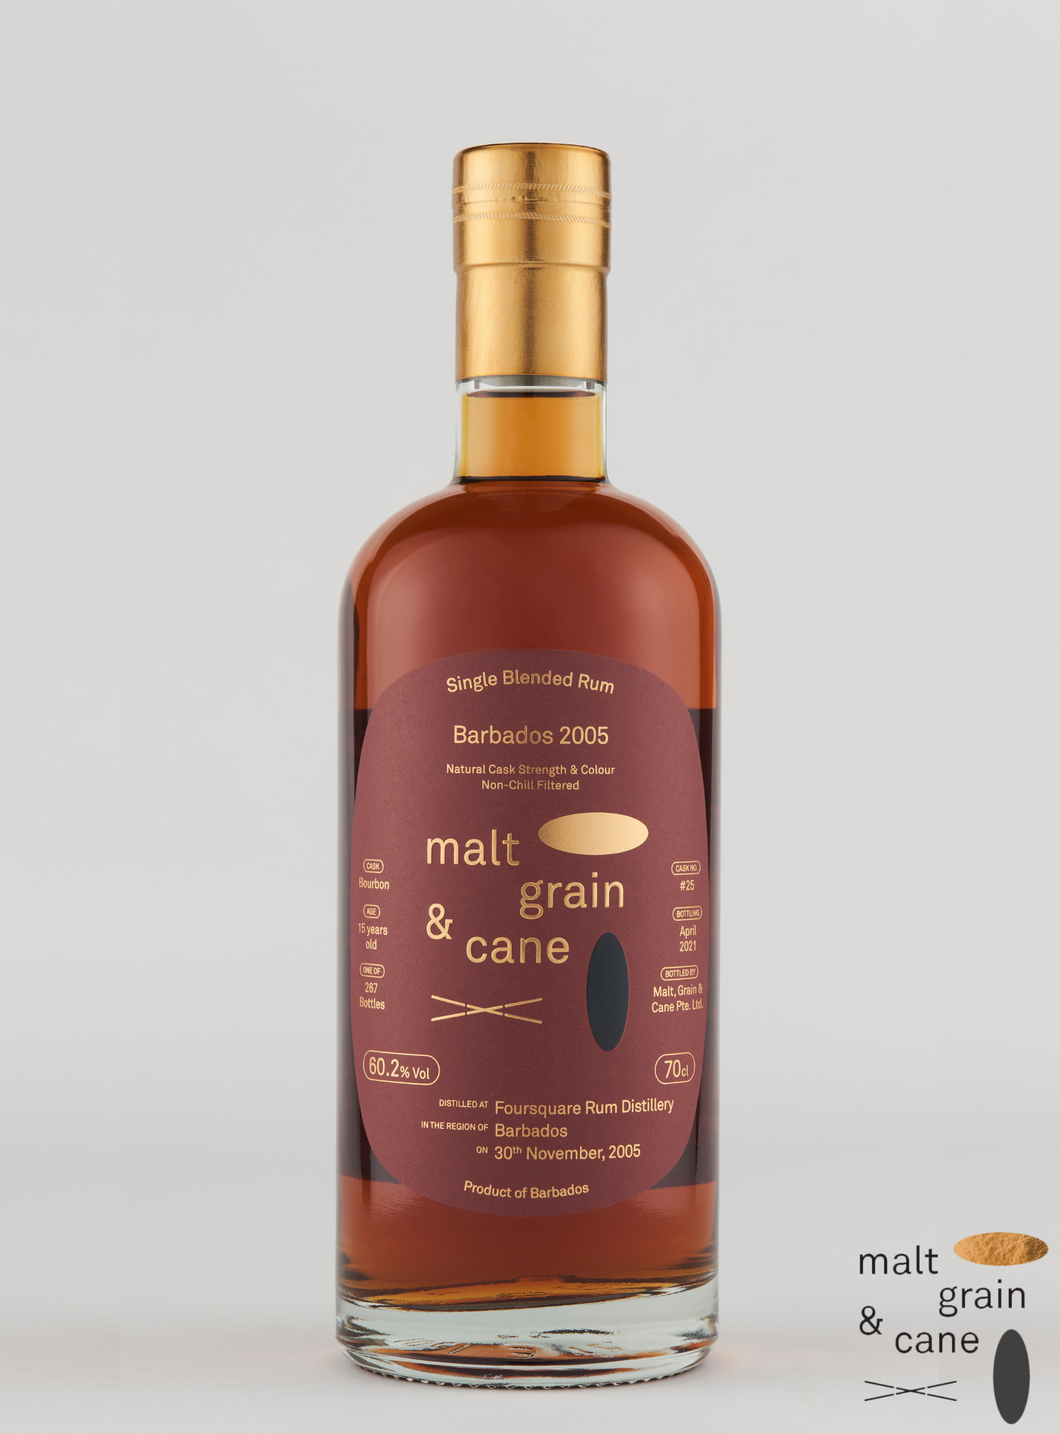 Malt Grain & Cane: Barbados Foursquare Rum 2005, 15 Years, 60.2%